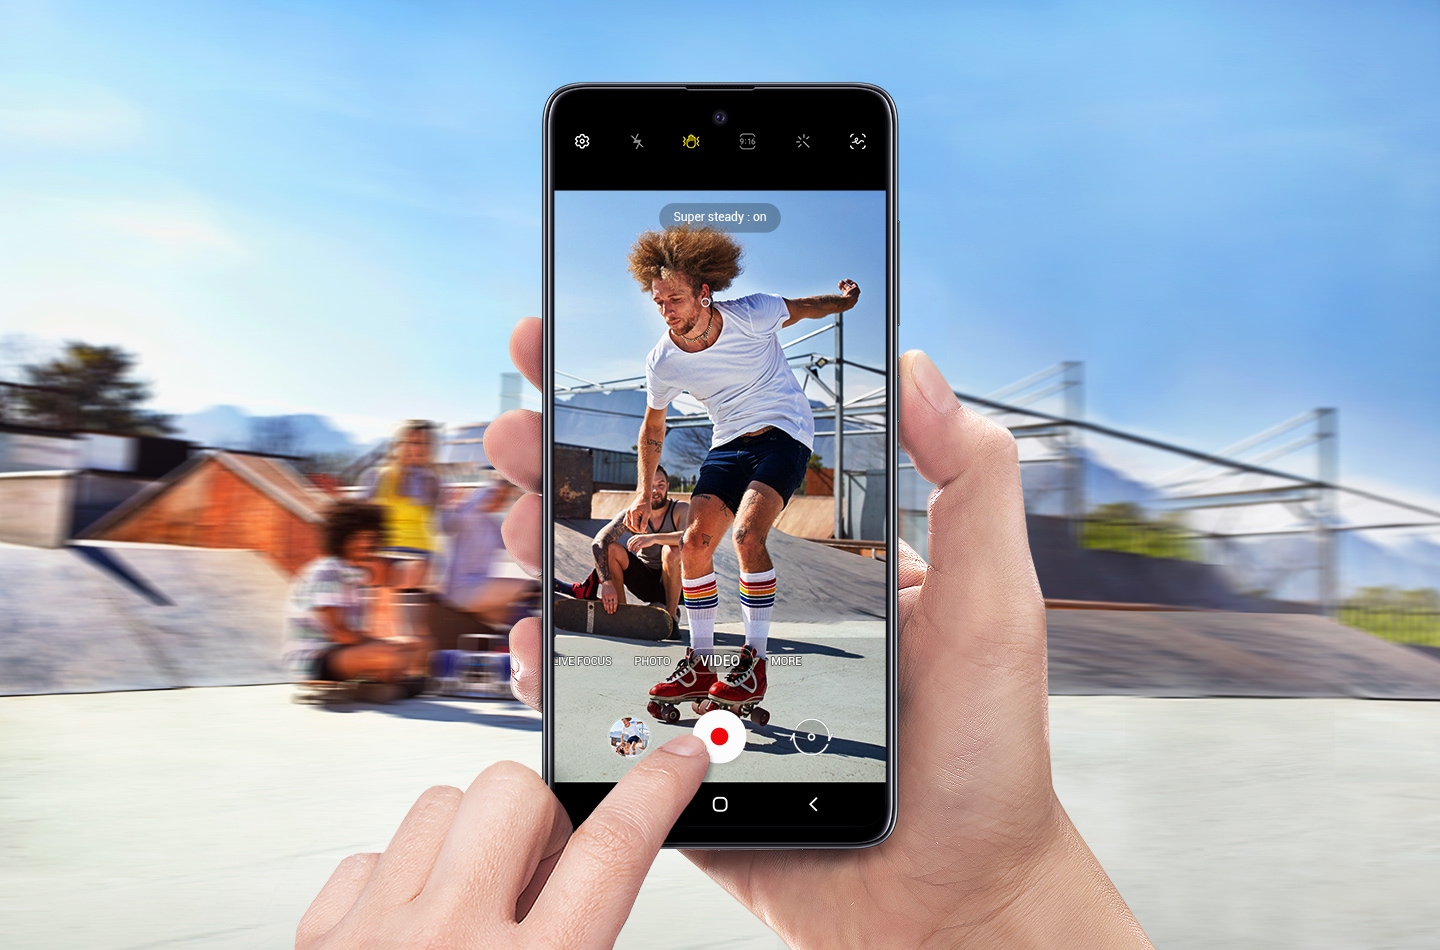 Smartfon Galaxy A51 pozwala na nagrywanie video niemal tak, jak profesjonalna kamera sportowa, zapewniając wyraźne ujęcia nawet w ruchu